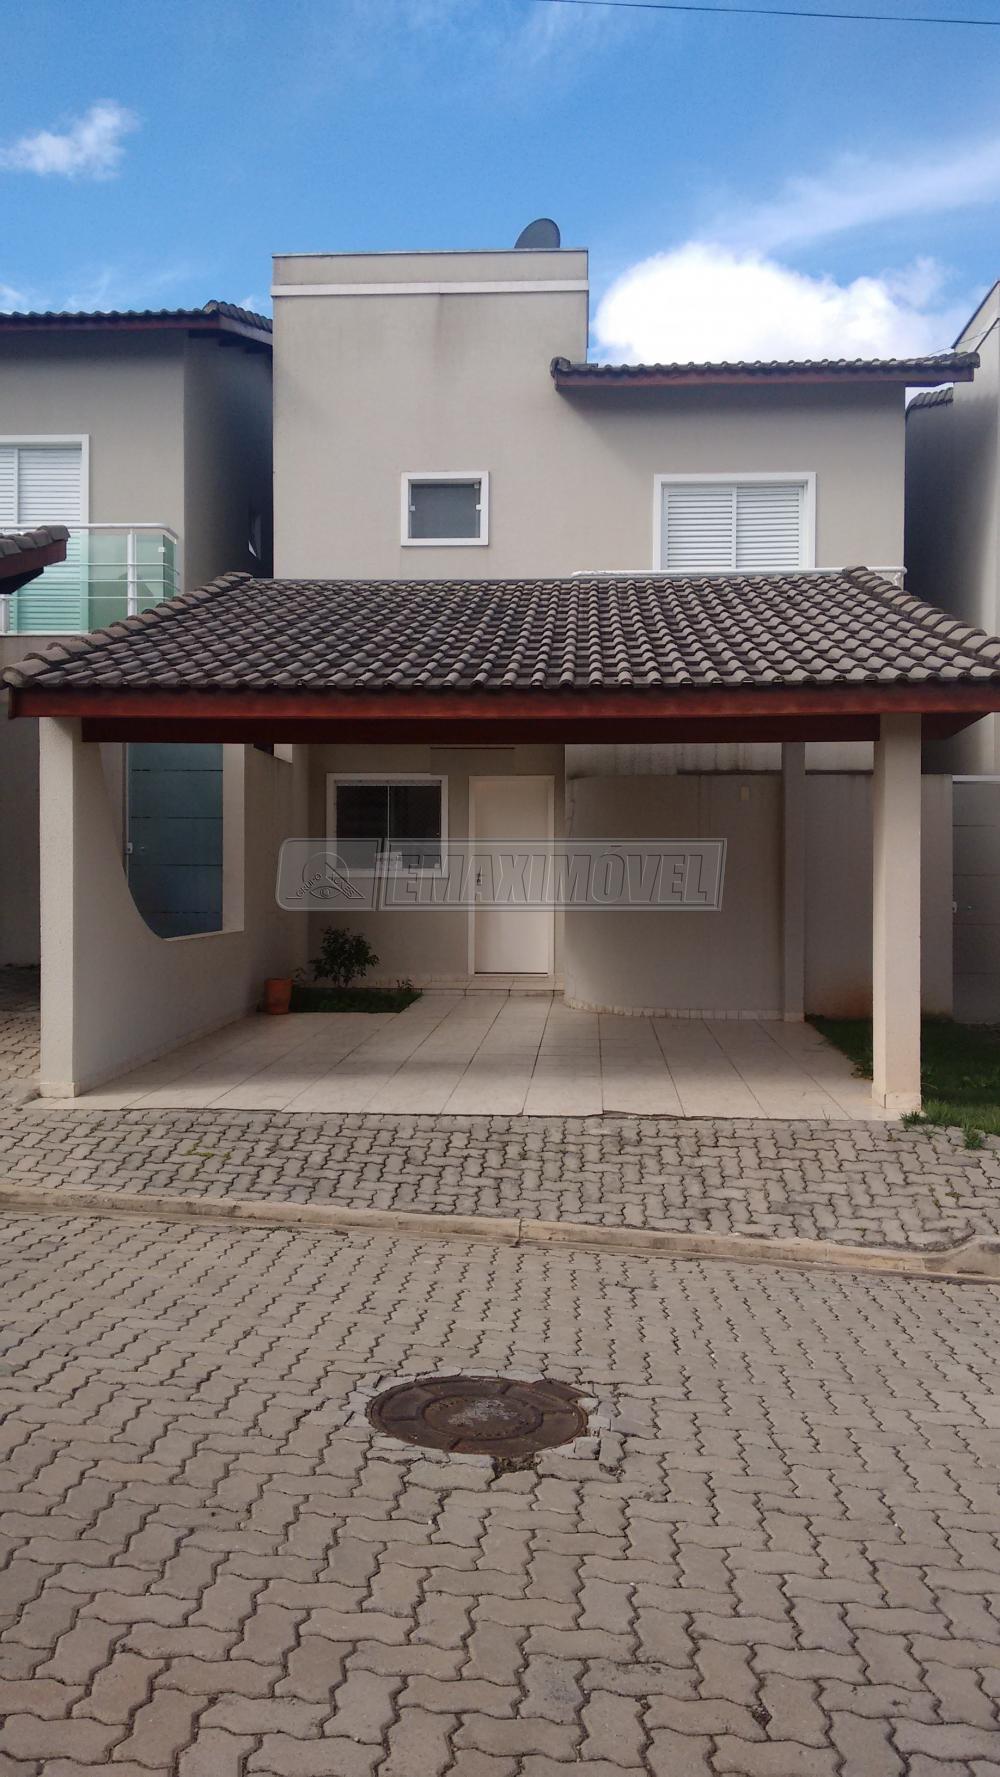 Comprar Casa / em Condomínios em Sorocaba R$ 540.000,00 - Foto 1